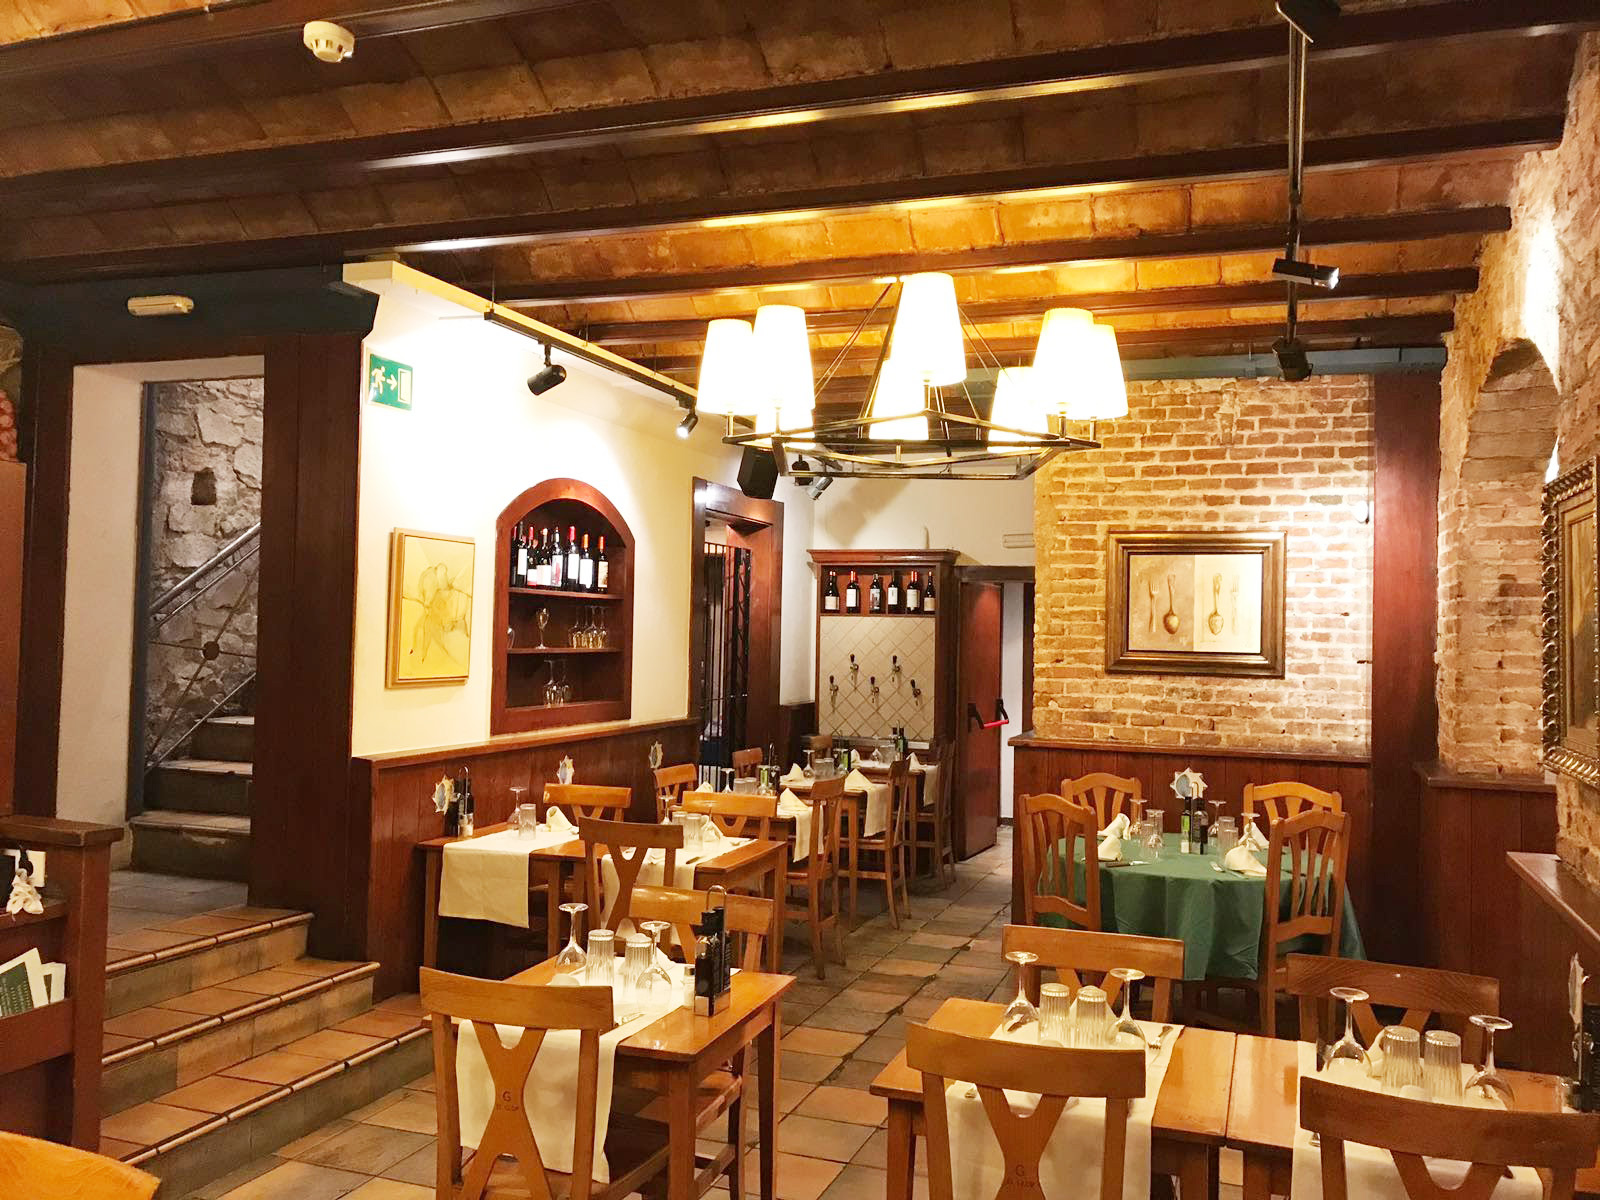 Restaurante de cocina catalana y mediterránea construido con ladrillo cuenta con terraza y sirve menús para grupos.              